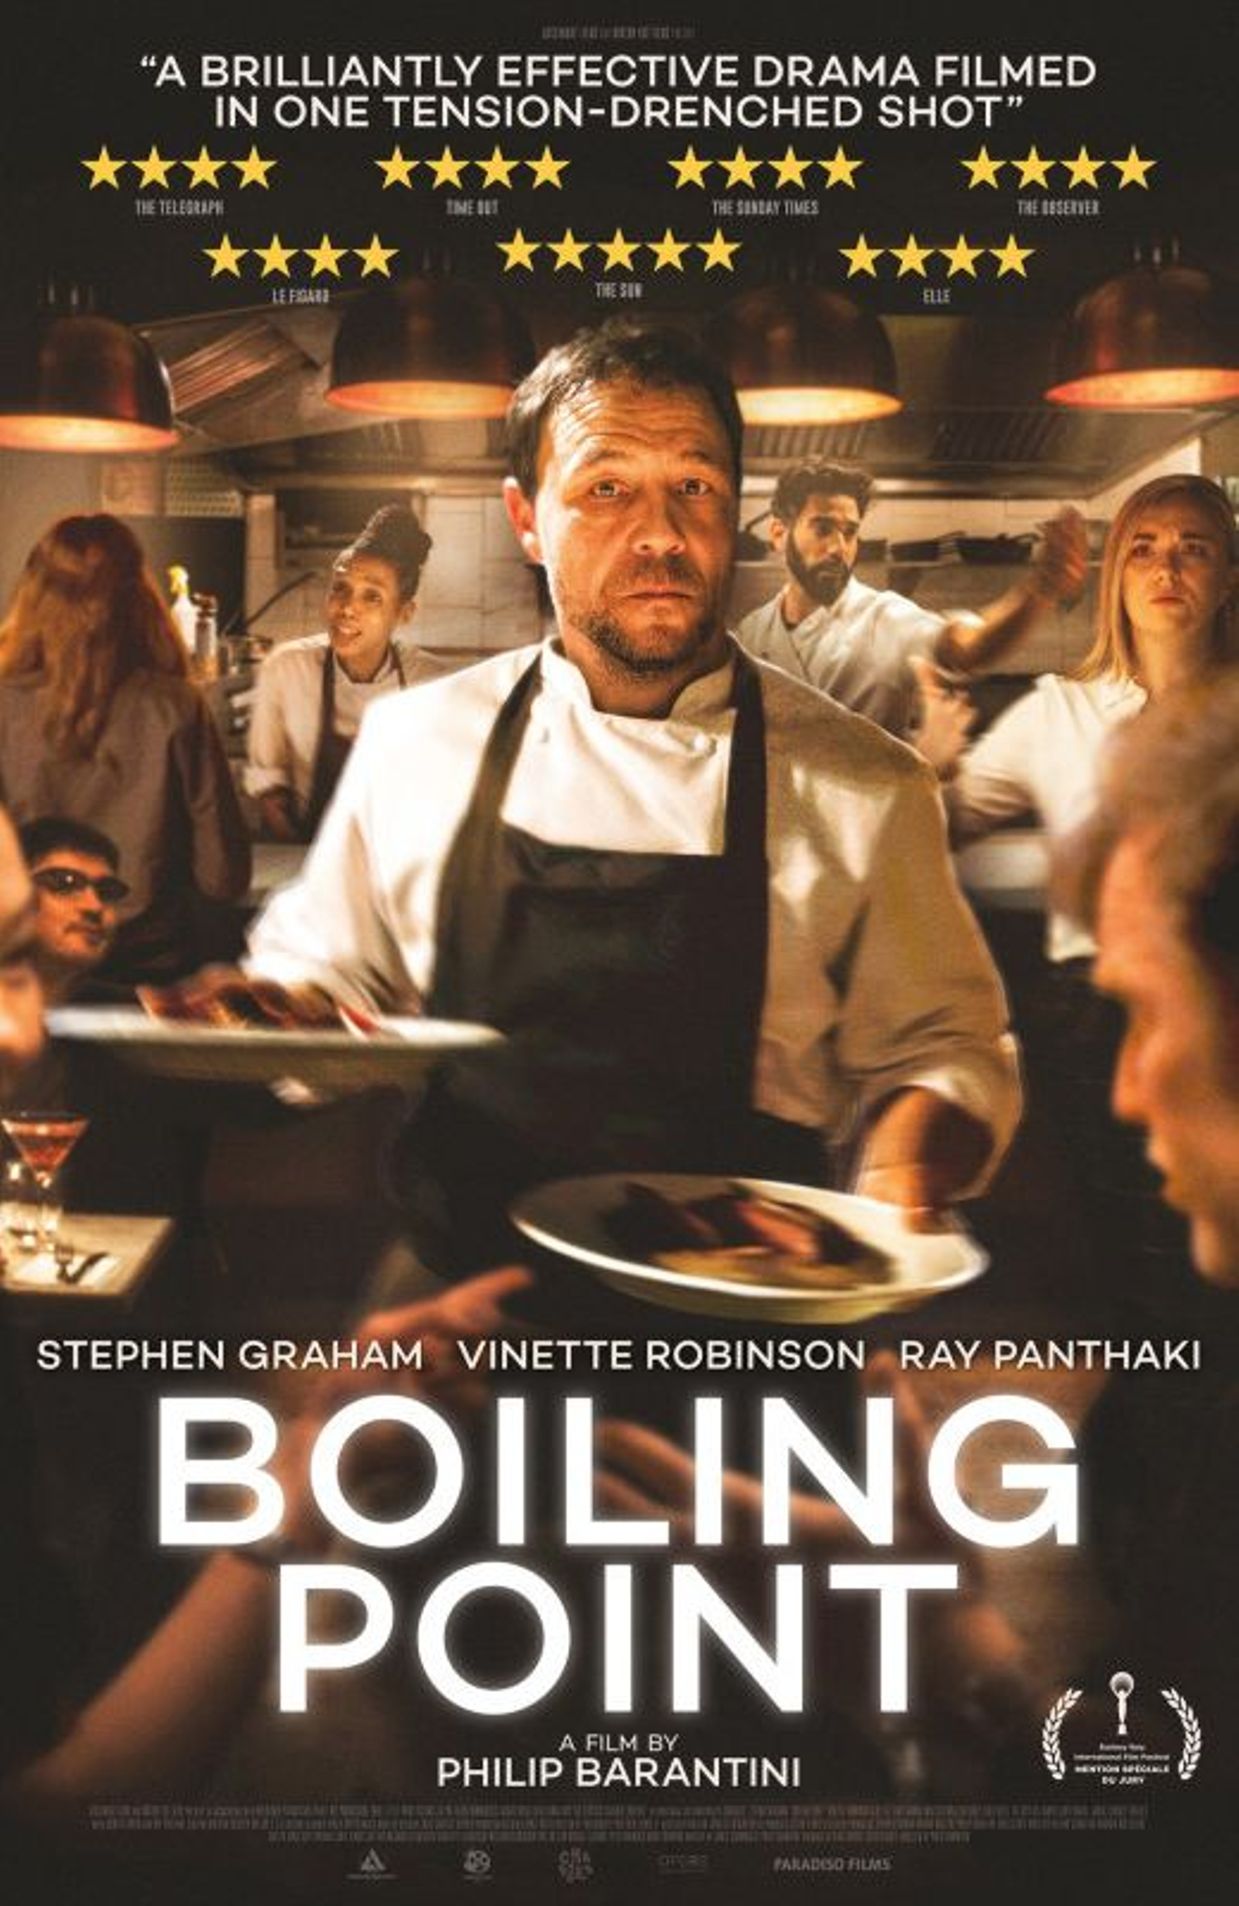 L'affiche de "Boiling point"